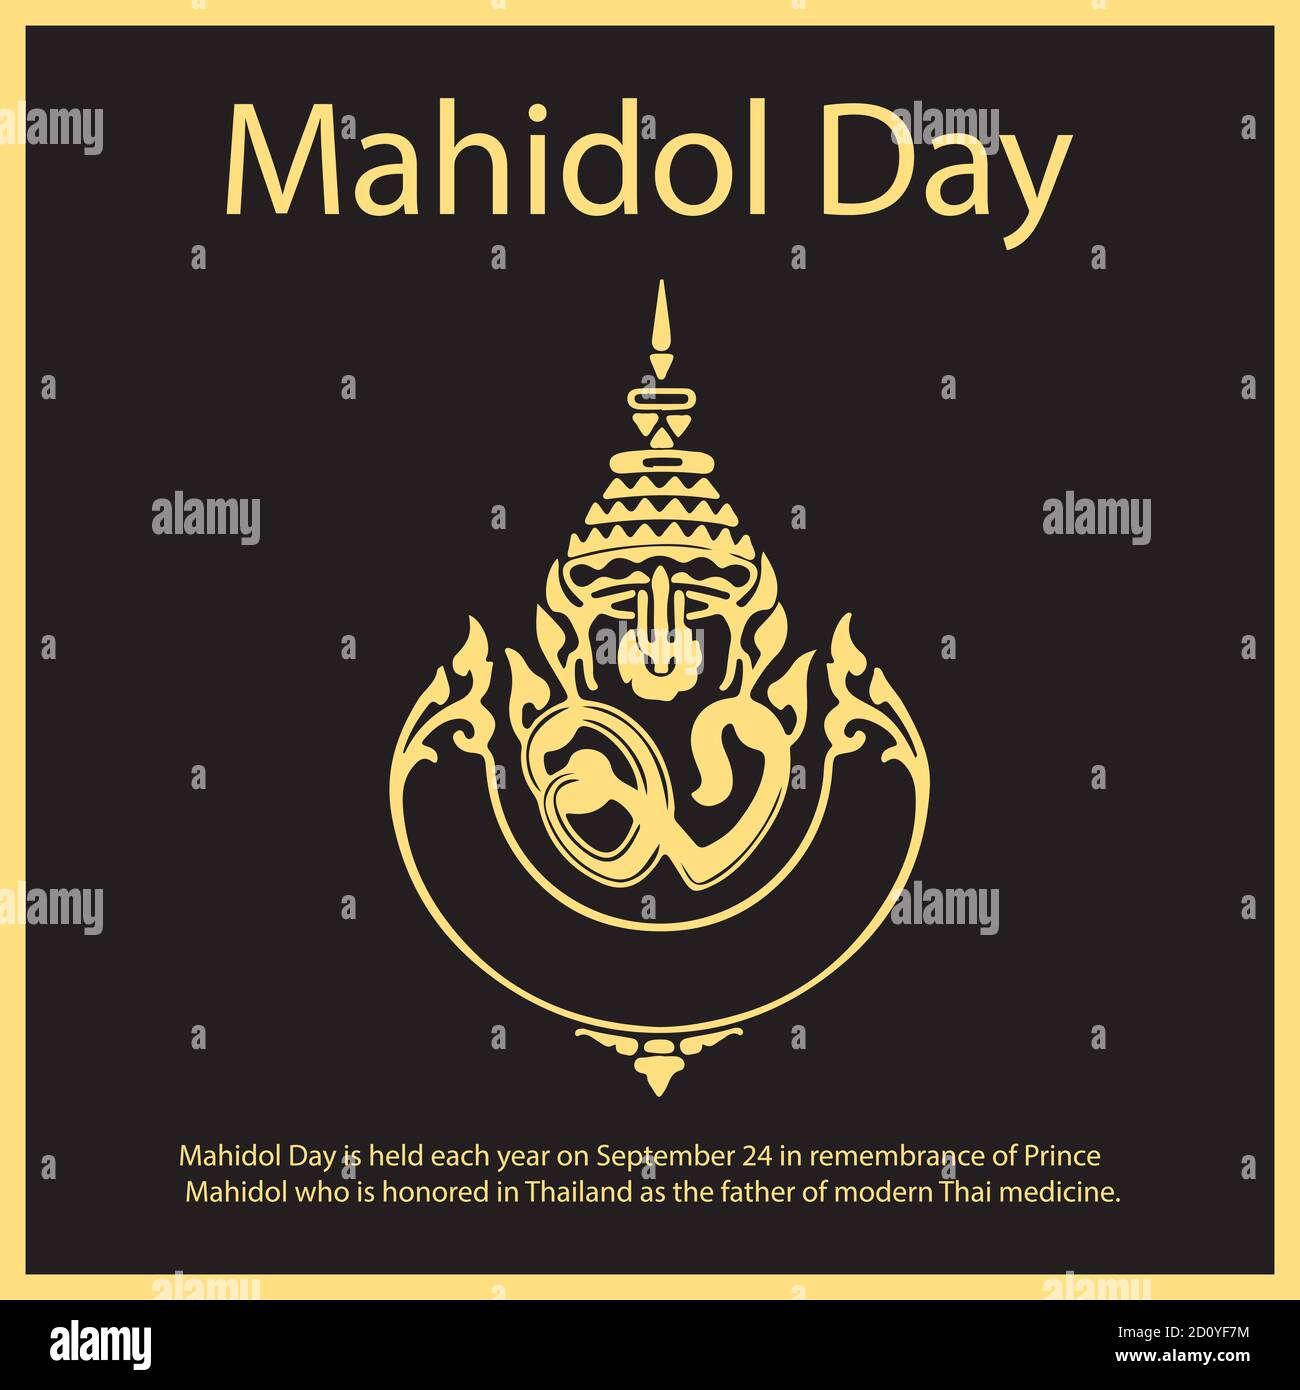 Der Mahidol Day findet jedes Jahr am 24. September statt, um an Prinz Mahidol zu erinnern, der in Thailand als Vater der modernen thailändischen Medizin geehrt wird. Stock Vektor